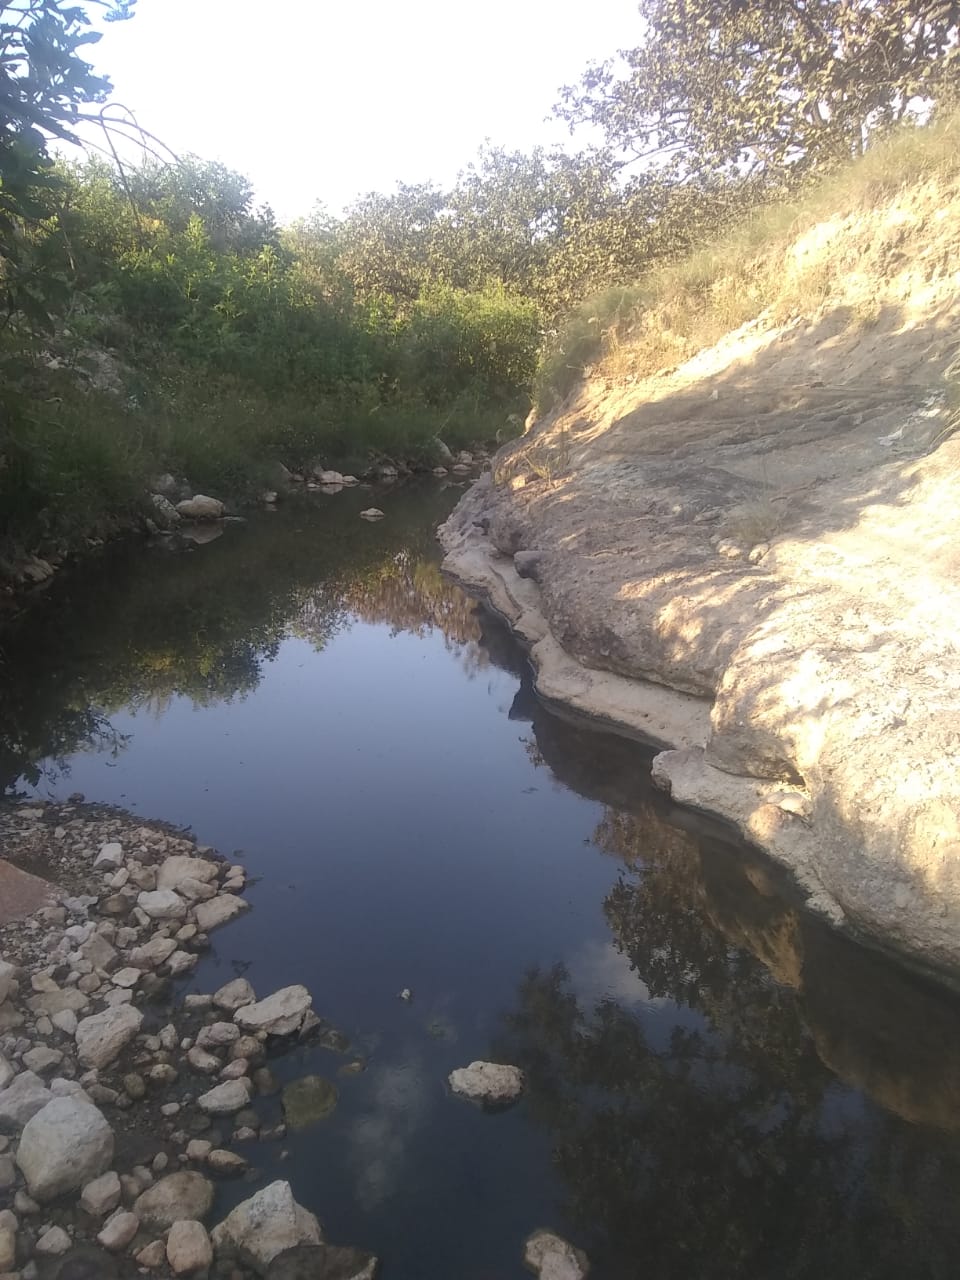 Piden al Gobernador que sanee seis ríos de Zapopan, contaminados por basureros, granjas y fraccionamientos (Jalisco)